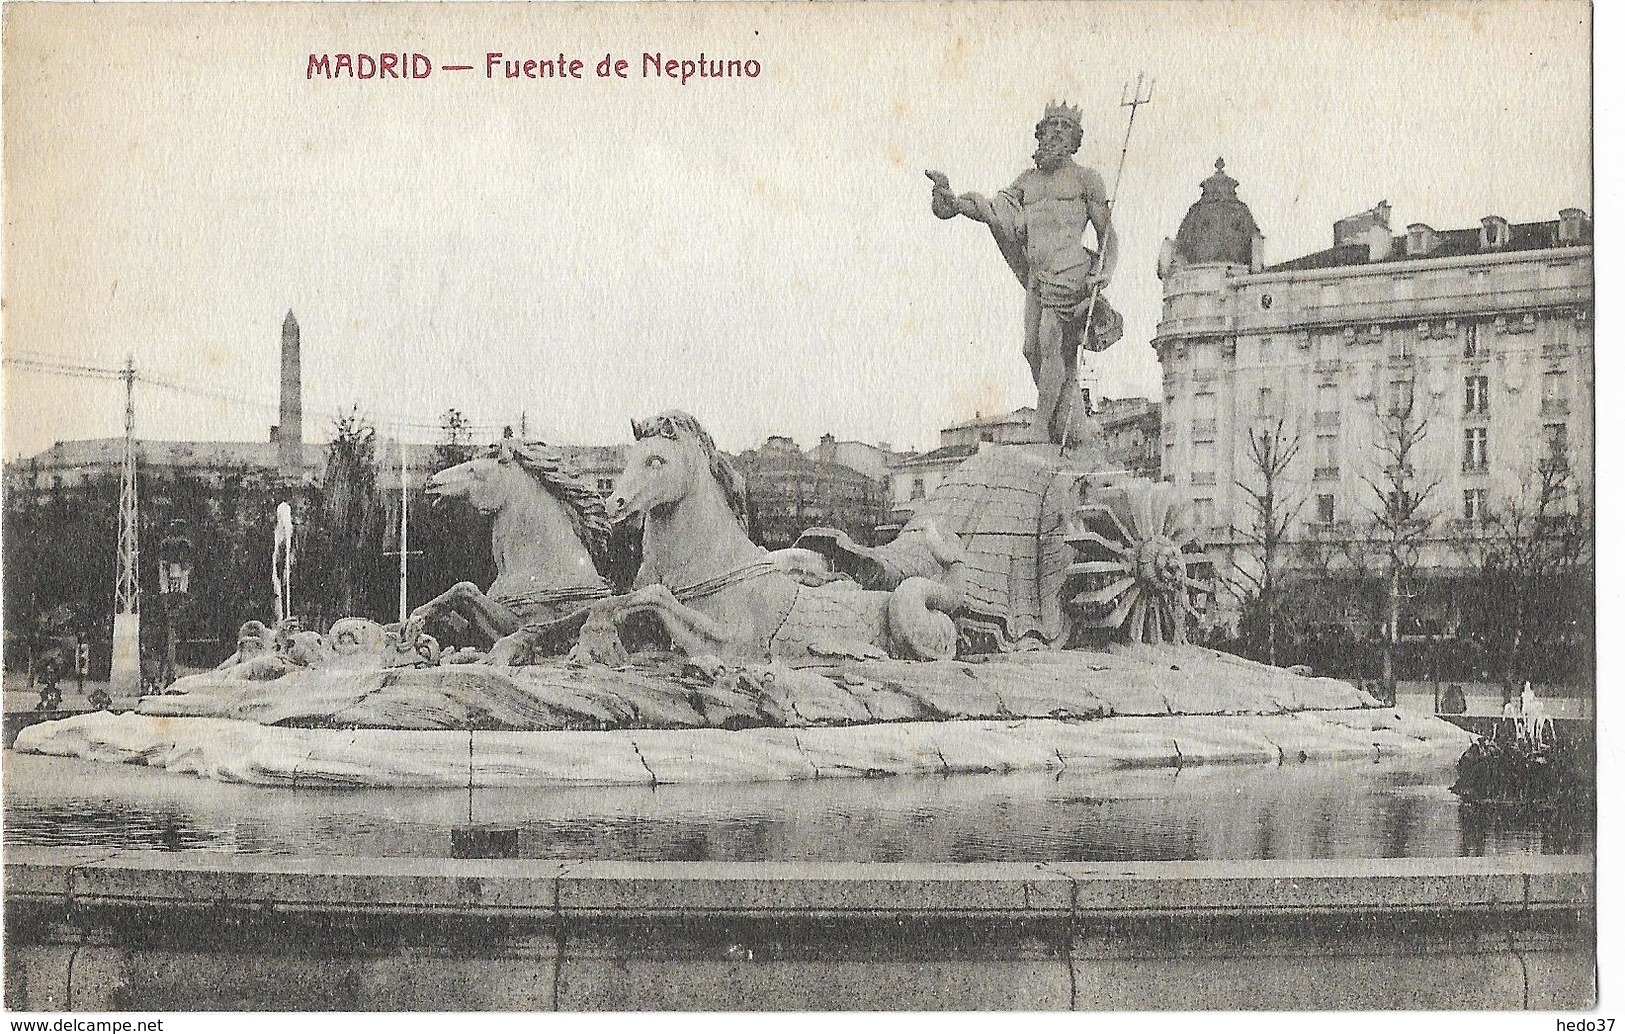 Madrid - Fuente de Neptuno